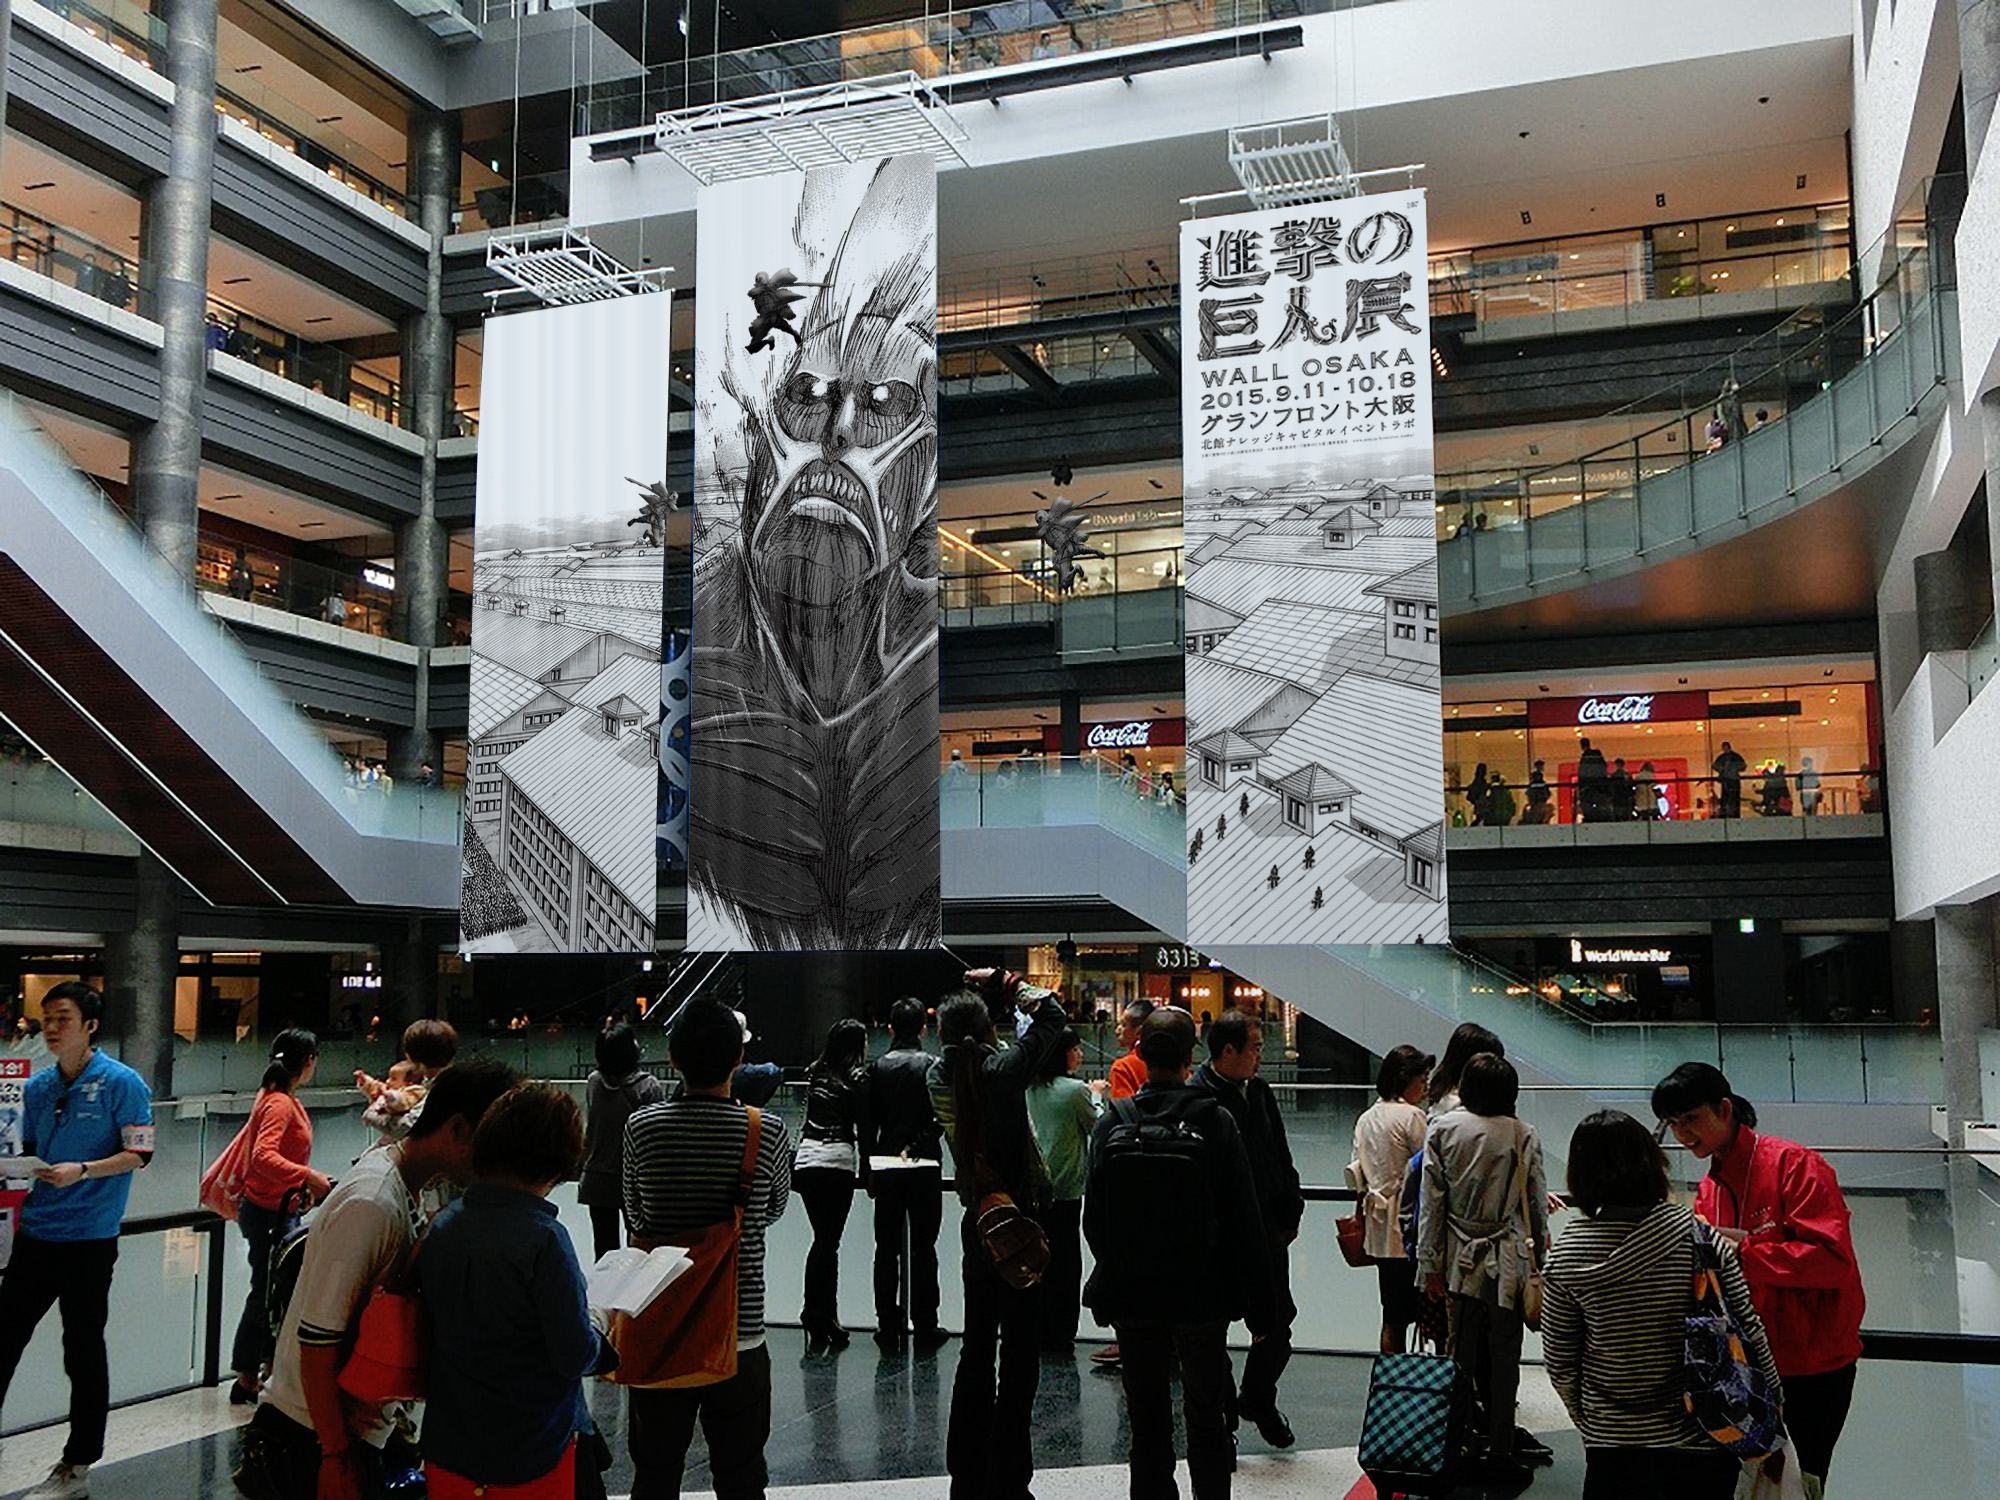 調査兵団 グランフロント大阪で戦闘開始 進撃の巨人展 Wall Osaka グランフロント大阪に巨人 と調査兵団が現る 一般社団法人ナレッジキャピタルのプレスリリース